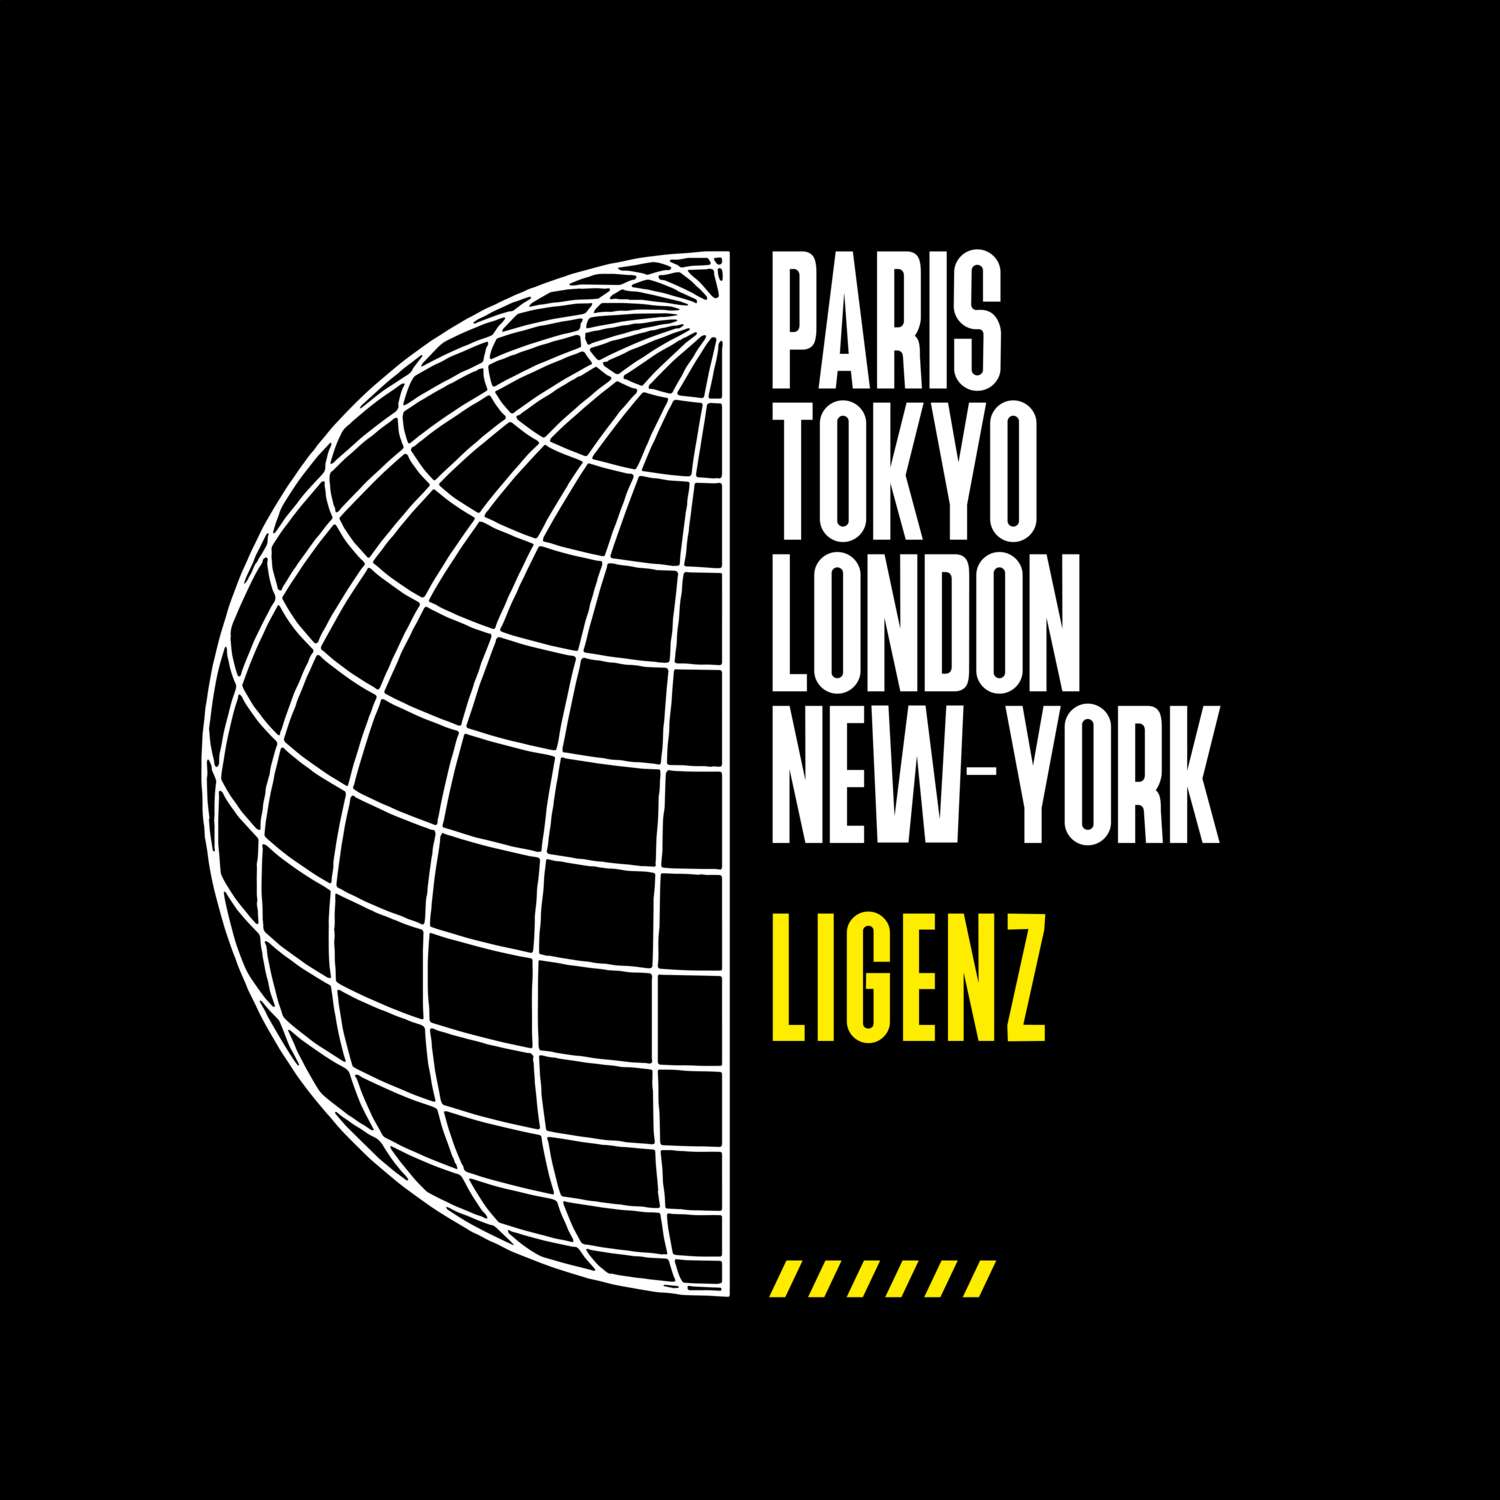 Ligenz T-Shirt »Paris Tokyo London«